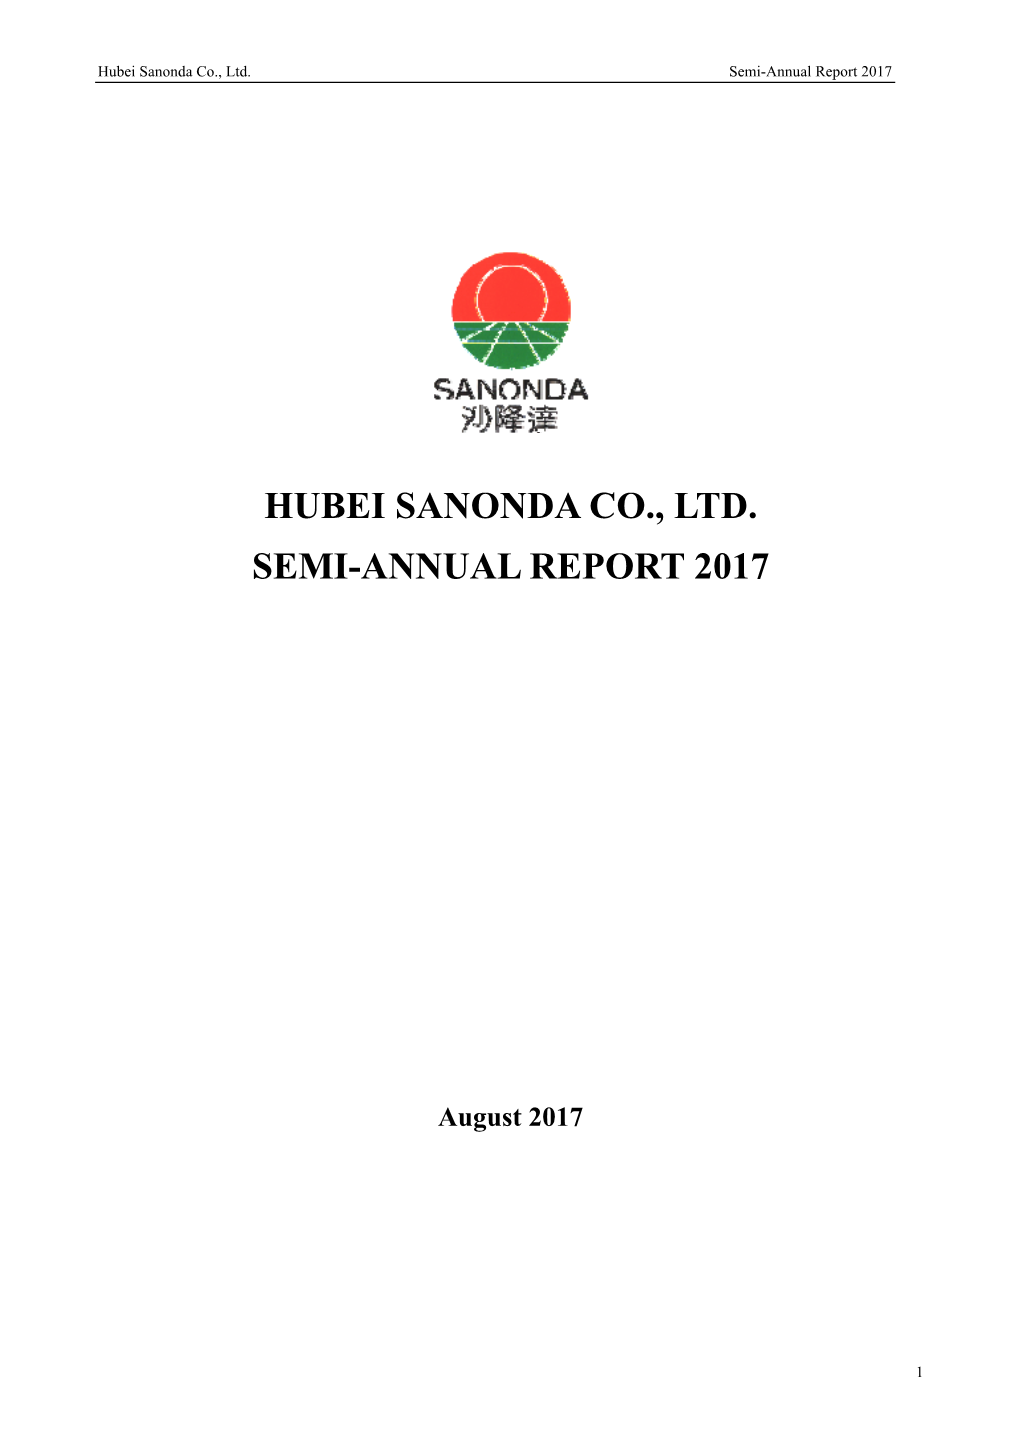 Hubei Sanonda Co., Ltd. Semi-Annual Report 2017